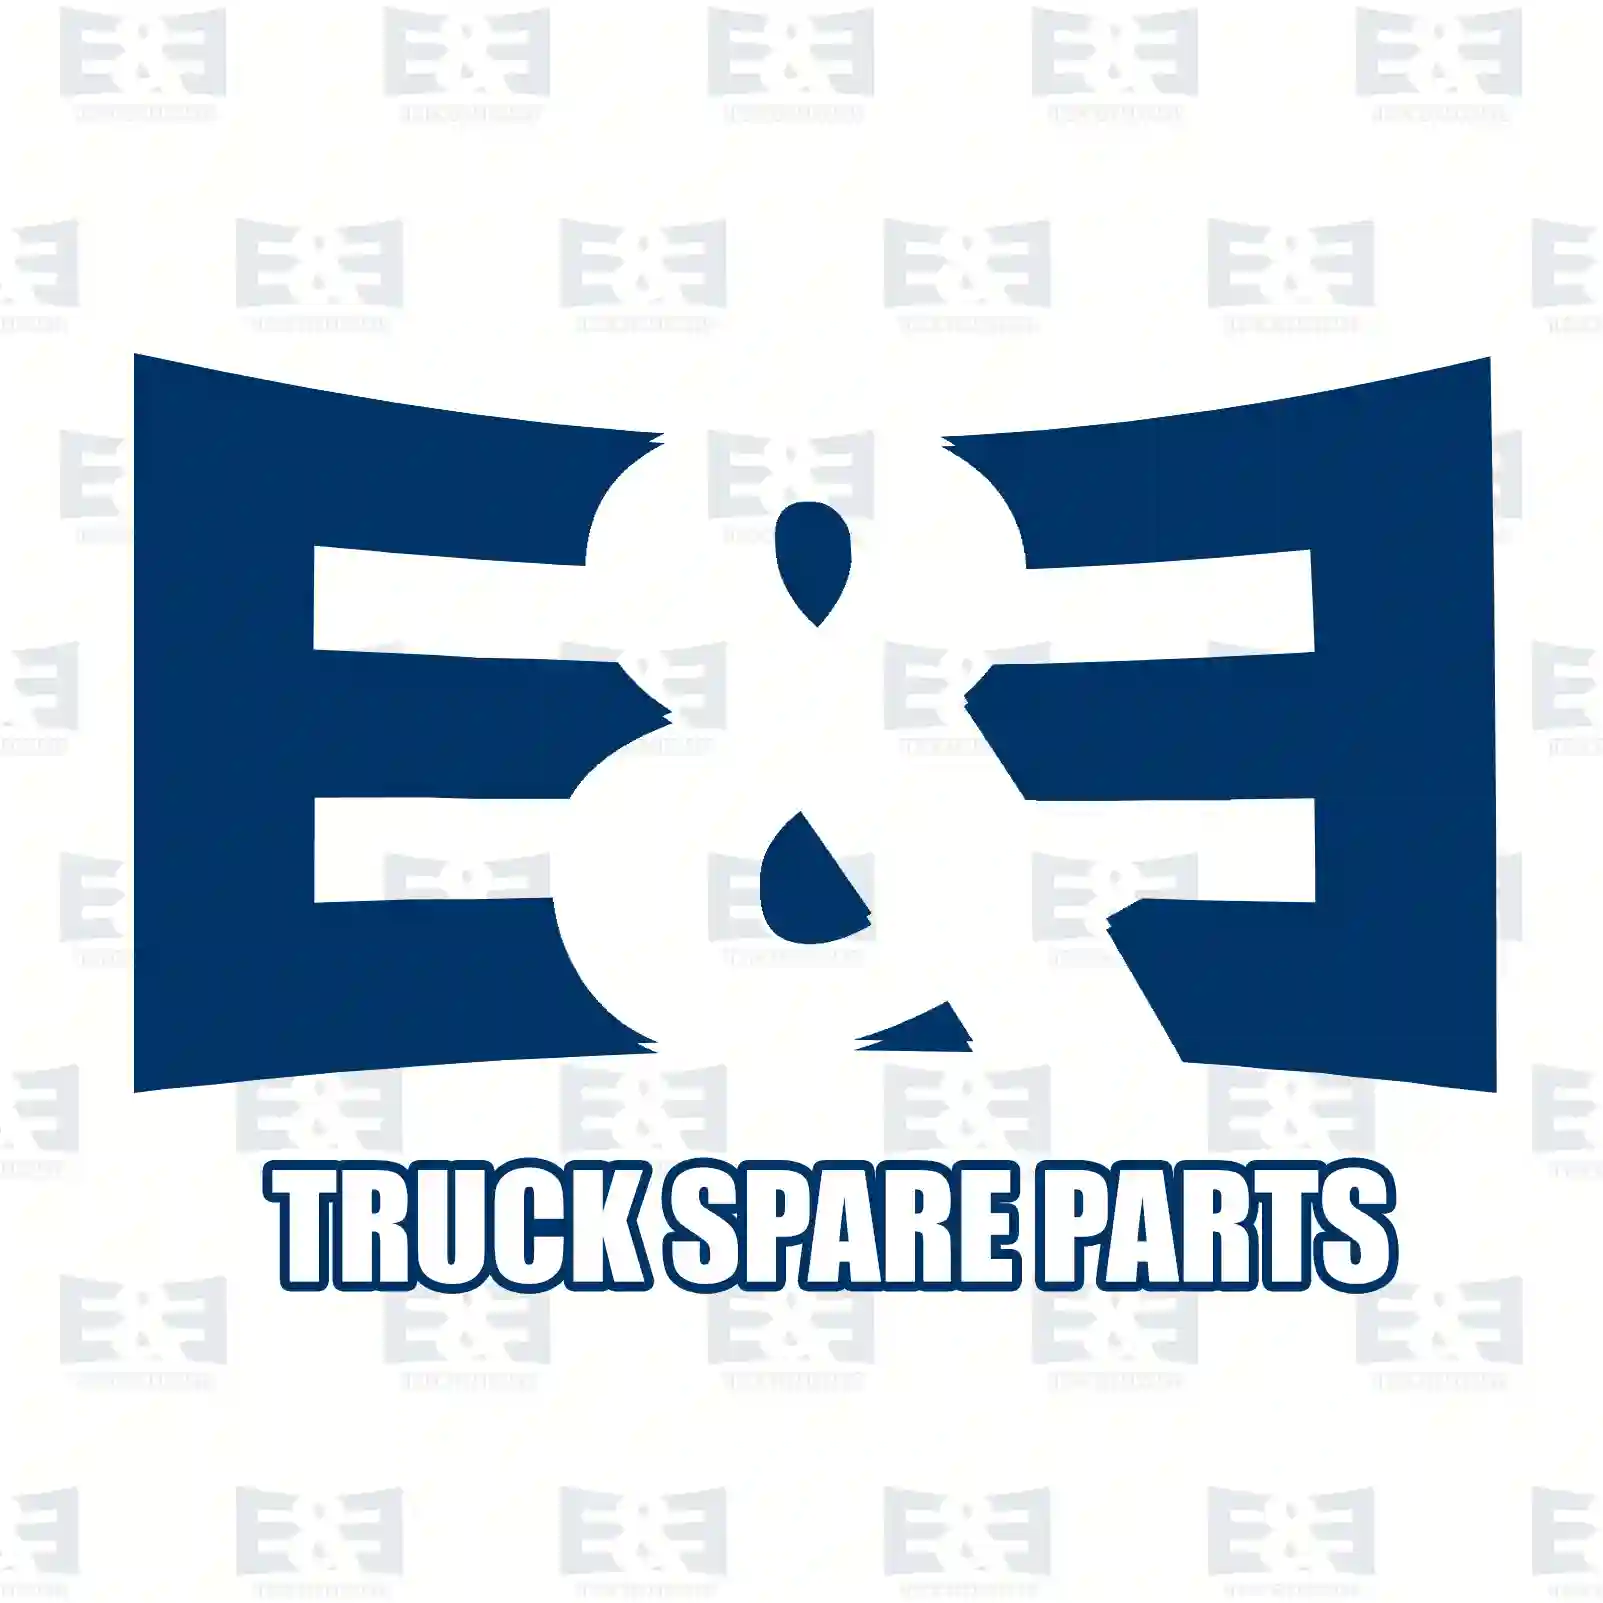 Propeller shaft, 2E2276775, 5010524346 ||  2E2276775 E&E Truck Spare Parts | Truck Spare Parts, Auotomotive Spare Parts Propeller shaft, 2E2276775, 5010524346 ||  2E2276775 E&E Truck Spare Parts | Truck Spare Parts, Auotomotive Spare Parts